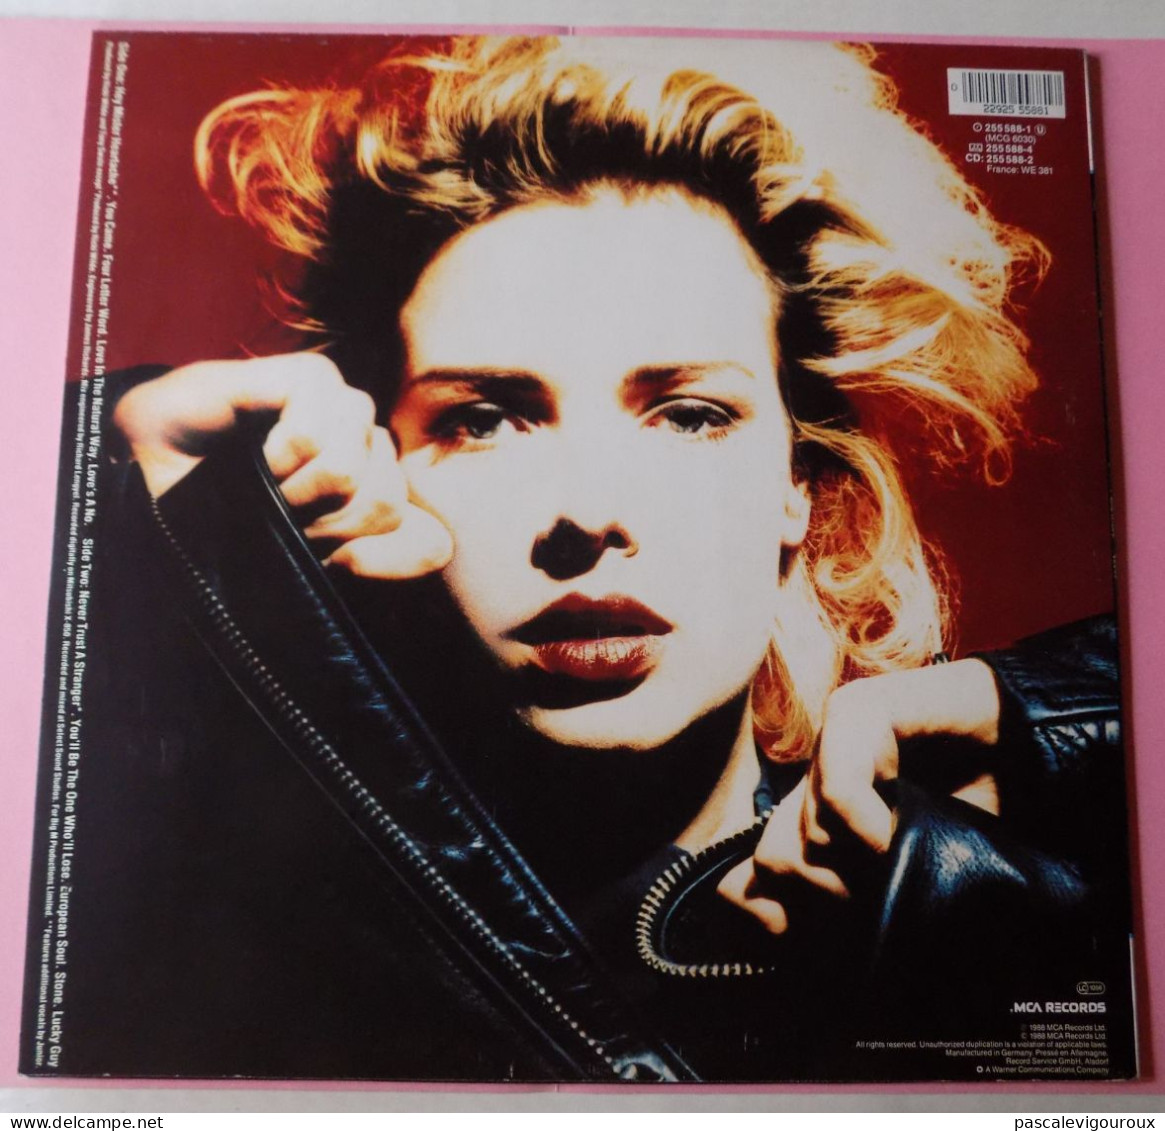 KIM WILDE - Close - Vinyle LP / 33T 1988 - Disco, Pop